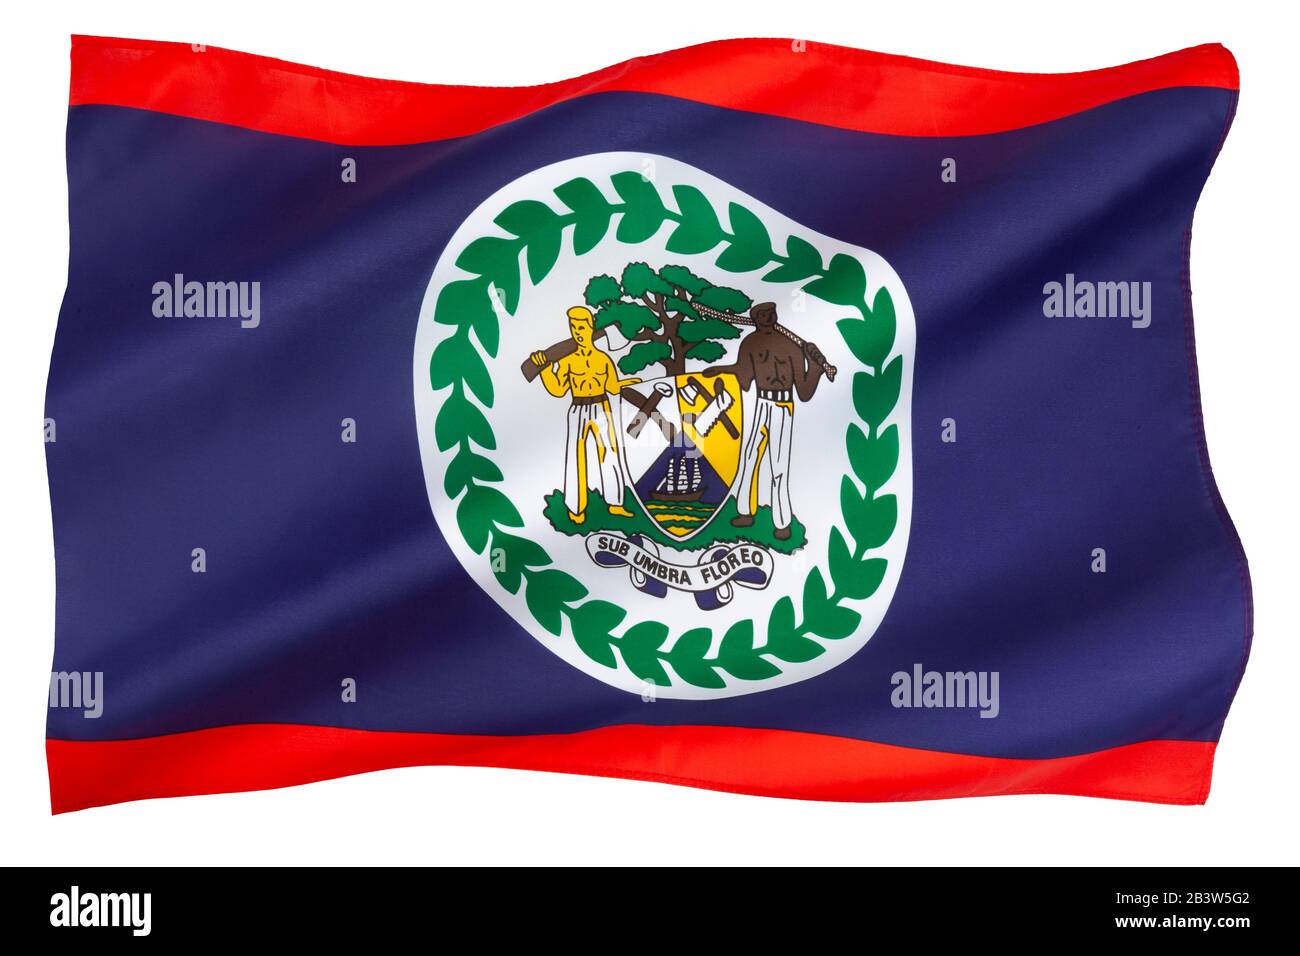 Die Flagge Belizes - angenommen am 21. September 1981, dem Tag, an dem Belize unabhängig wurde. Stockfoto